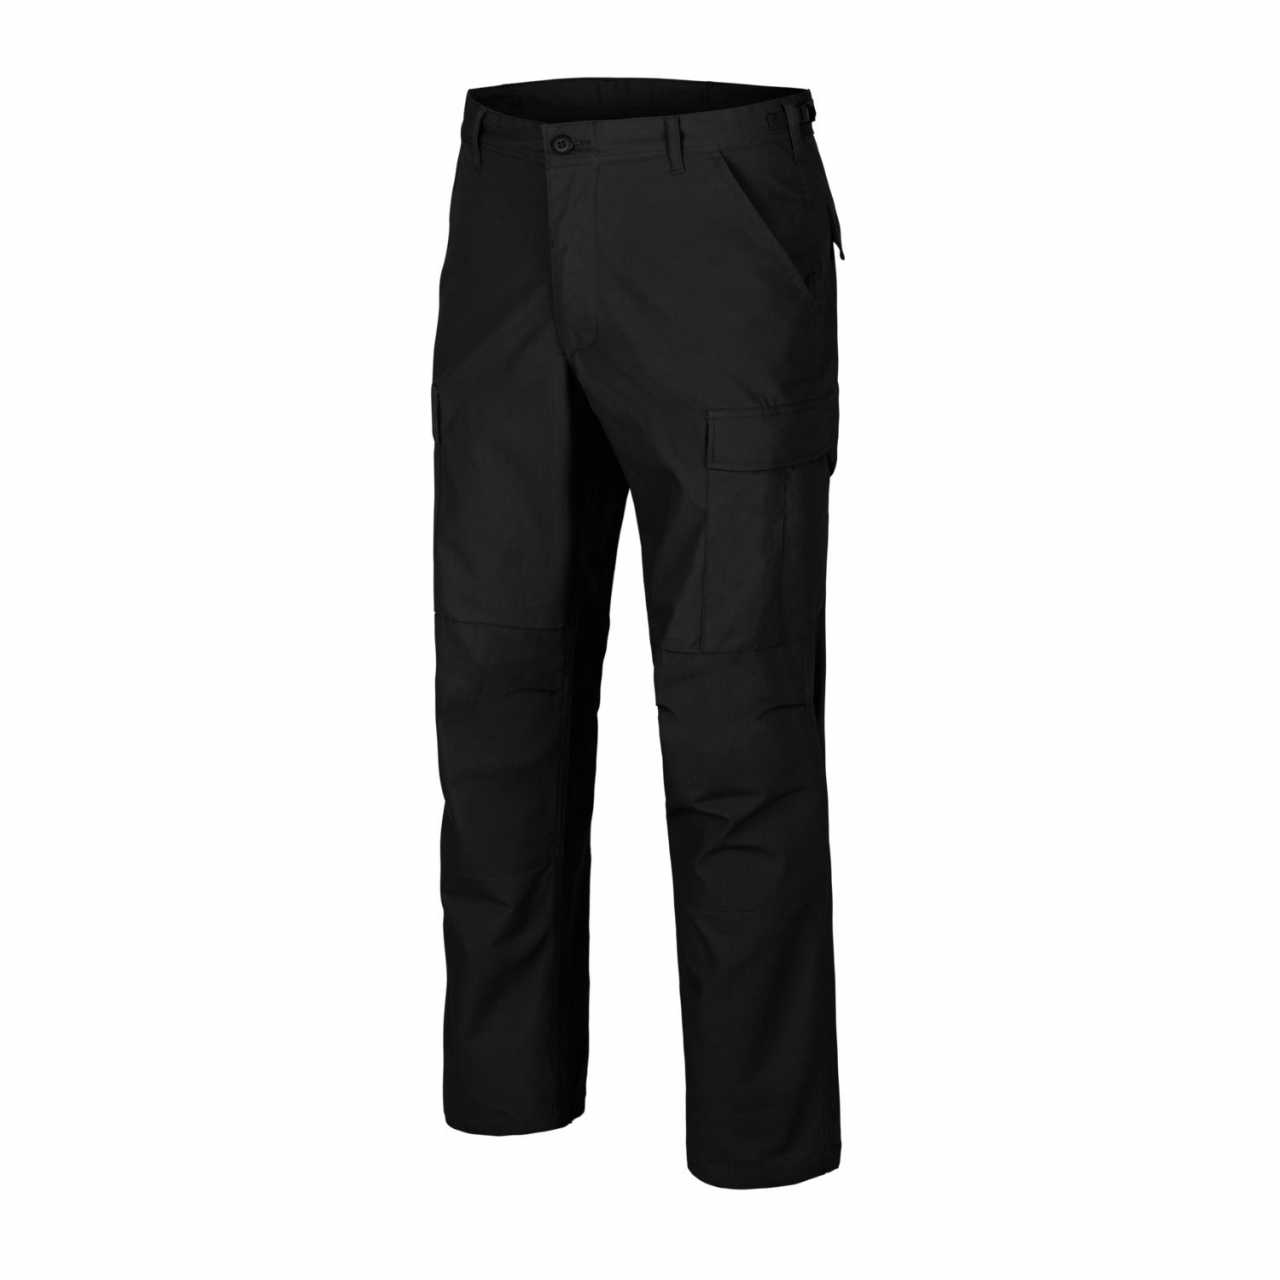 Kalhoty Helikon BDU Pants Poly Ripstop - černé, XXL